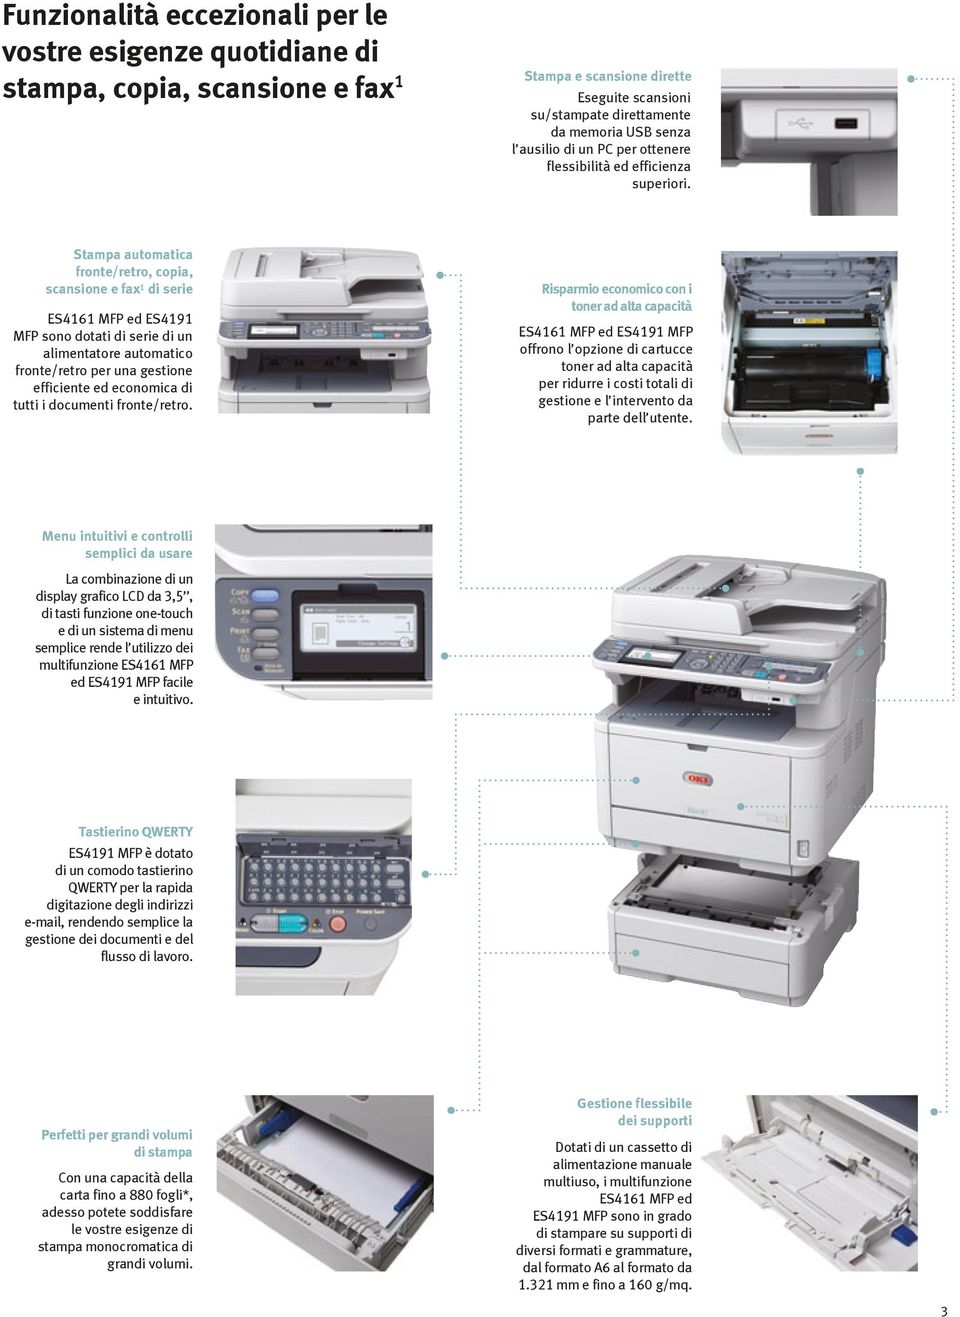 Stampa automatica fronte/retro, copia, scansione e fax 1 di serie ES4161 MFP ed ES4191 MFP sono dotati di serie di un alimentatore automatico fronte/retro per una gestione efficiente ed economica di